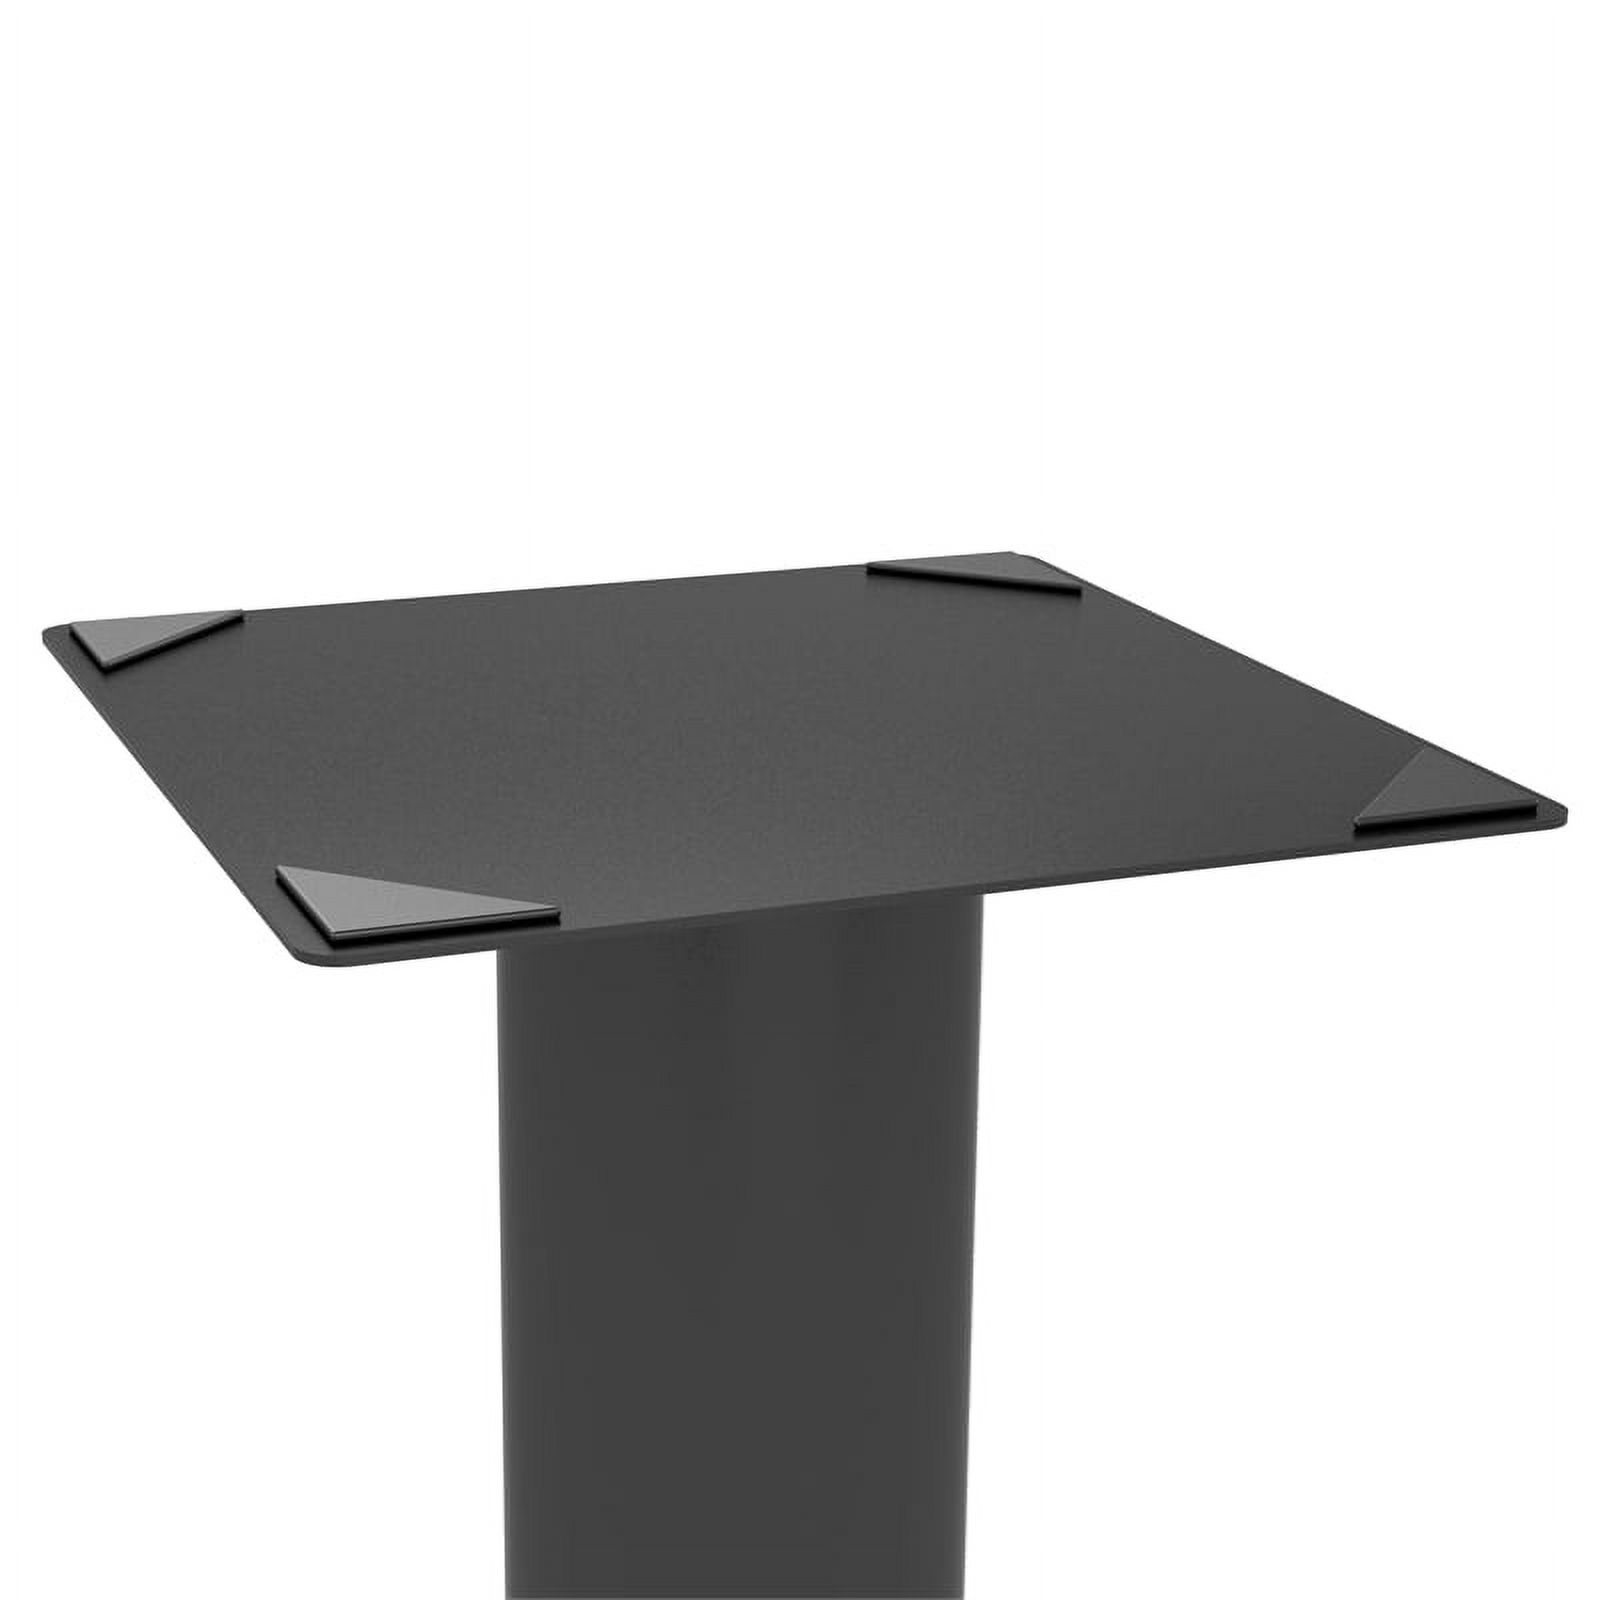 Atlantic Speaker Pedestal Stands, 10.5"W x 10.5"D x 30" H, Set of 2, Carbon Fiber Black - image 5 of 8